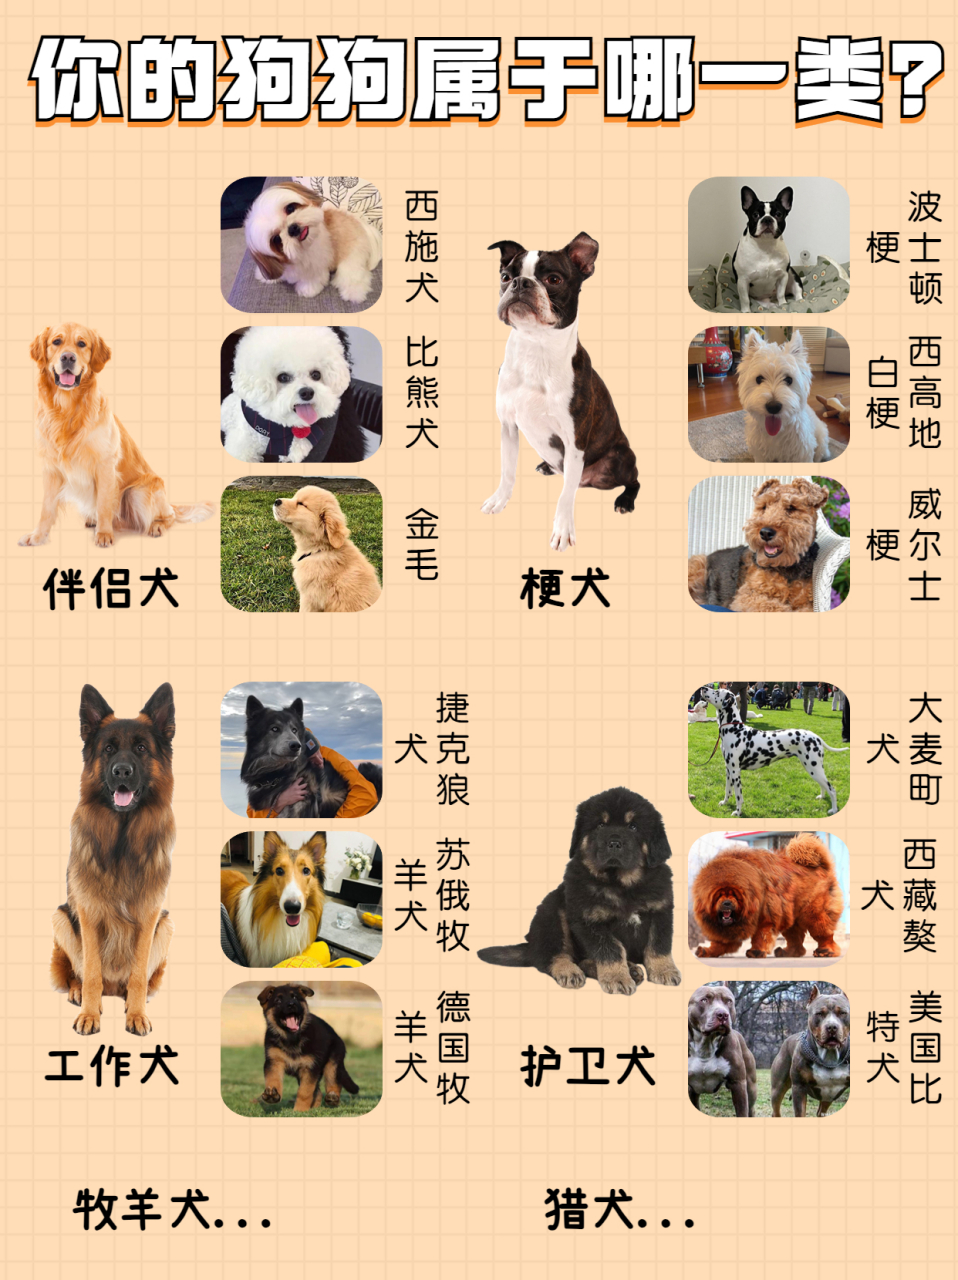 狗狗种类名字与图片图片